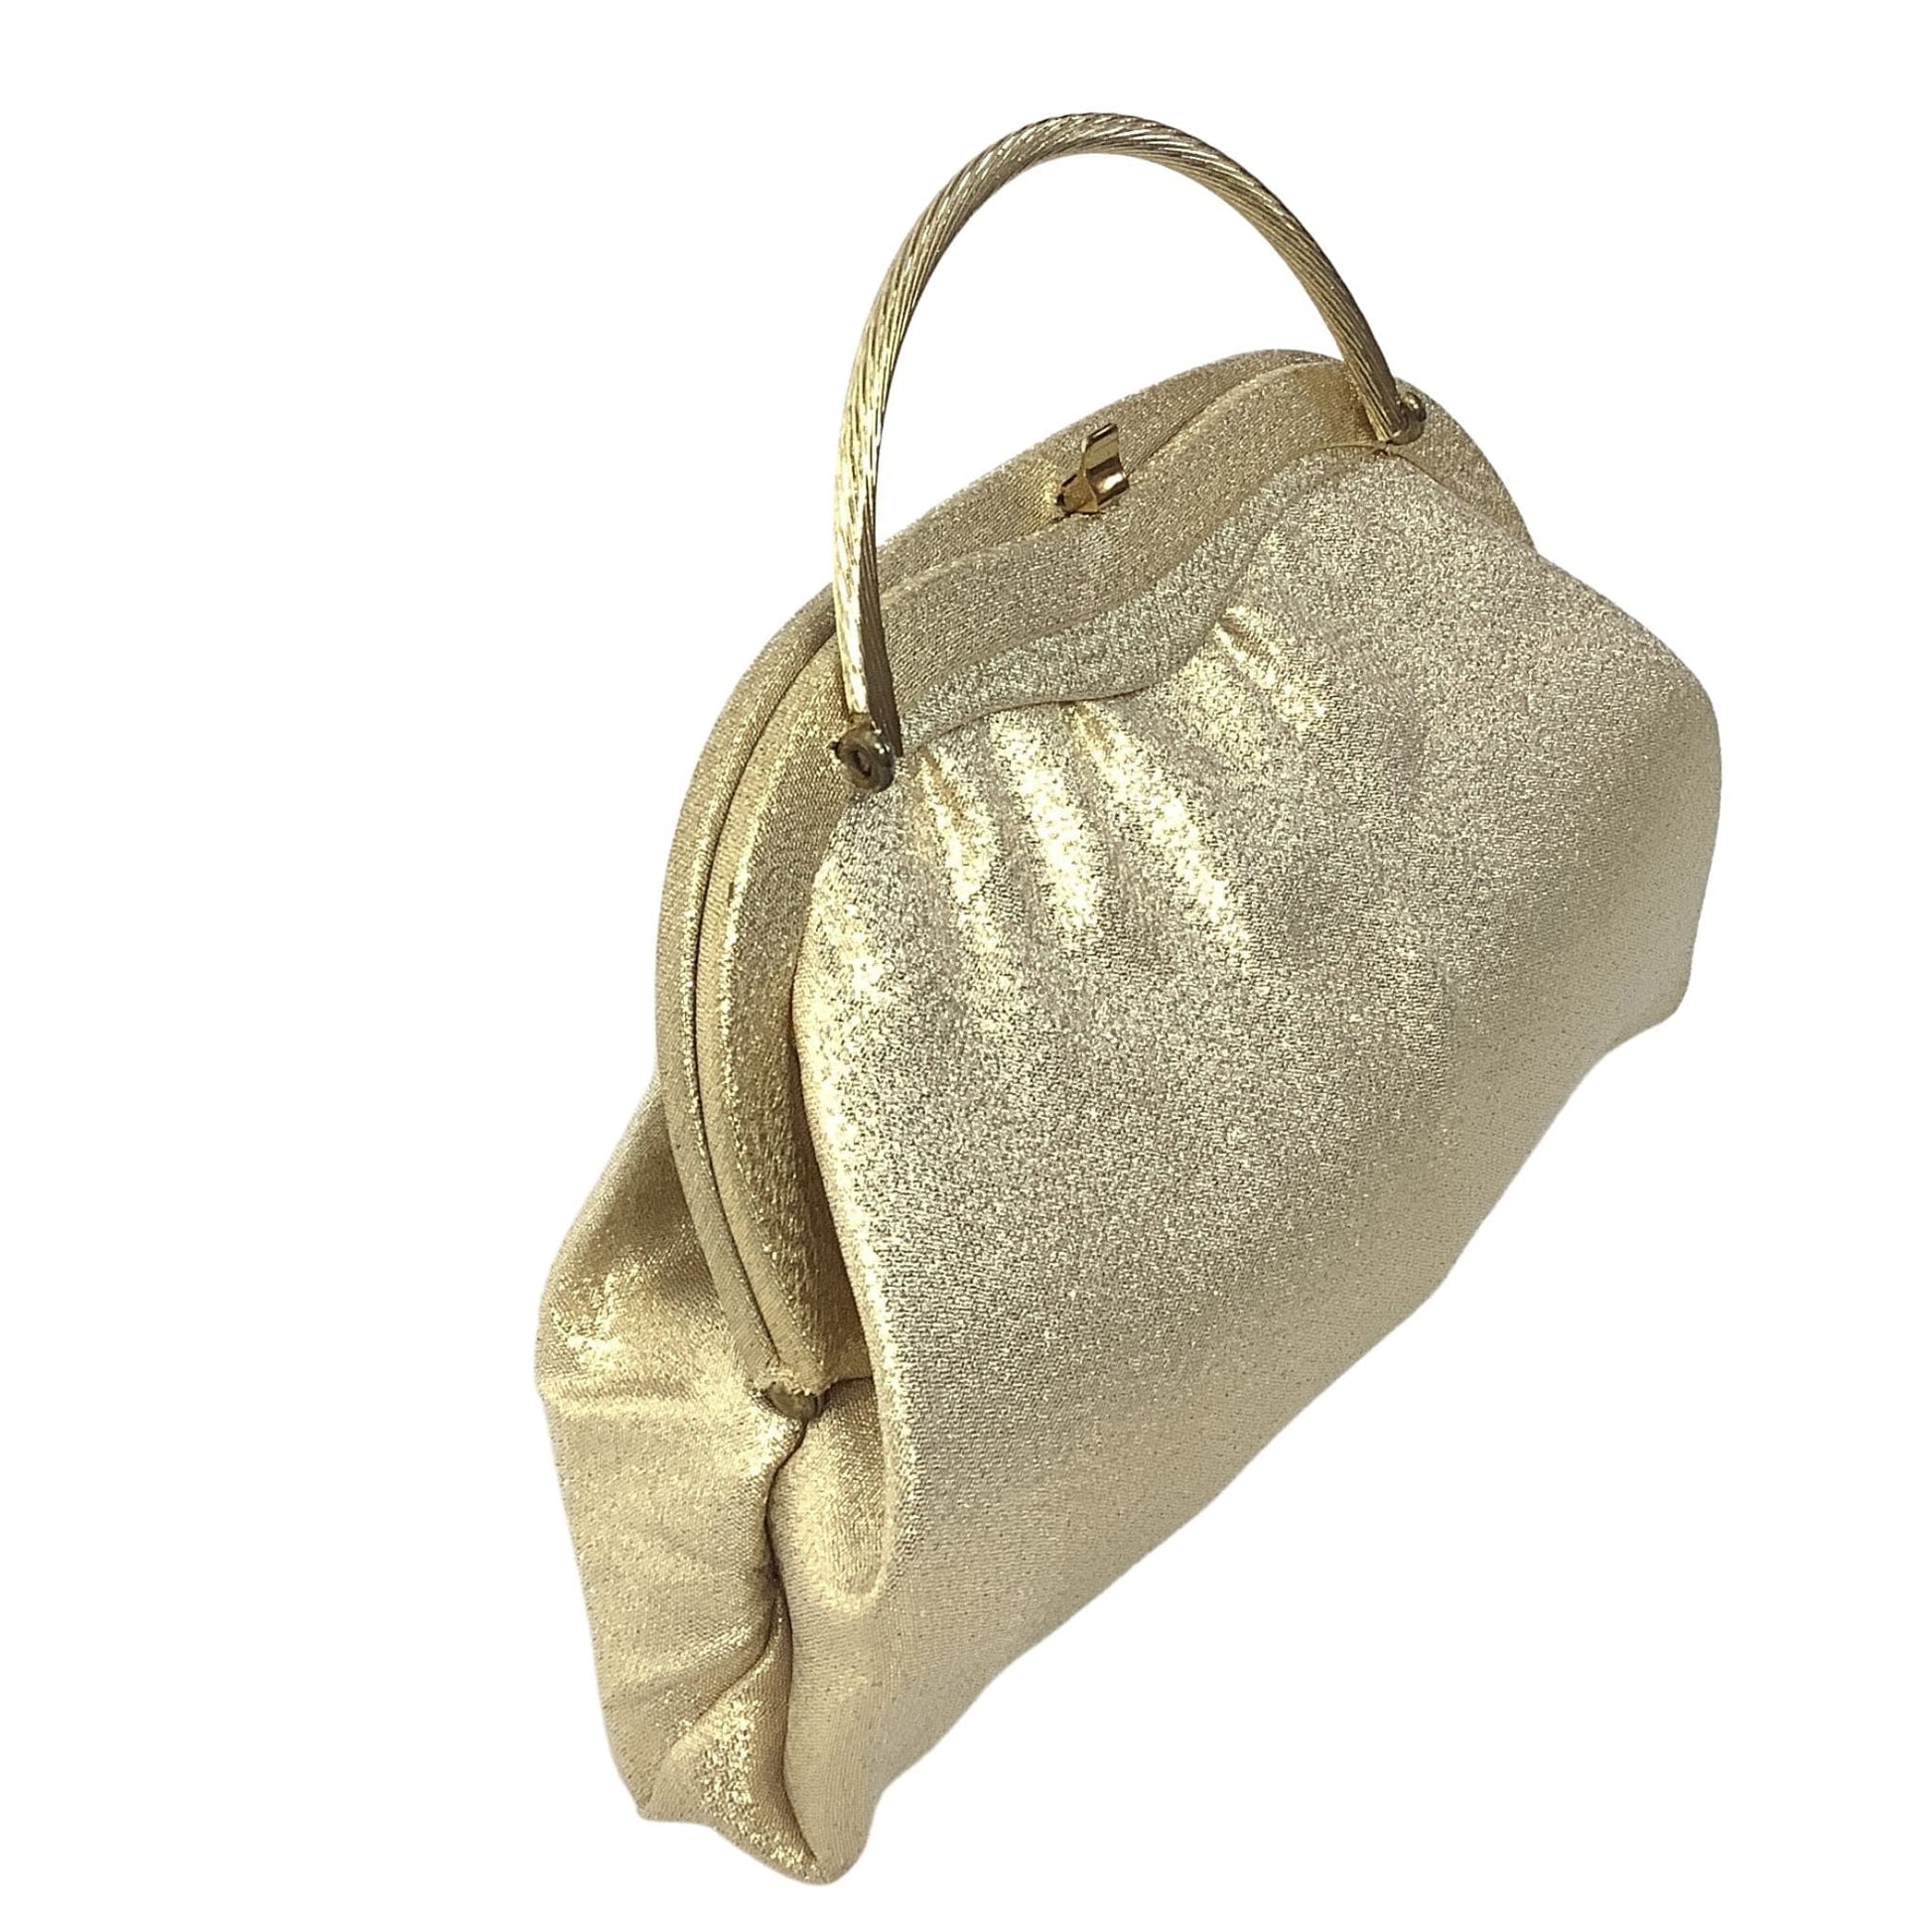 VTG Top Handle Lurex Bag Gold / Lurex / Vintage 1960s